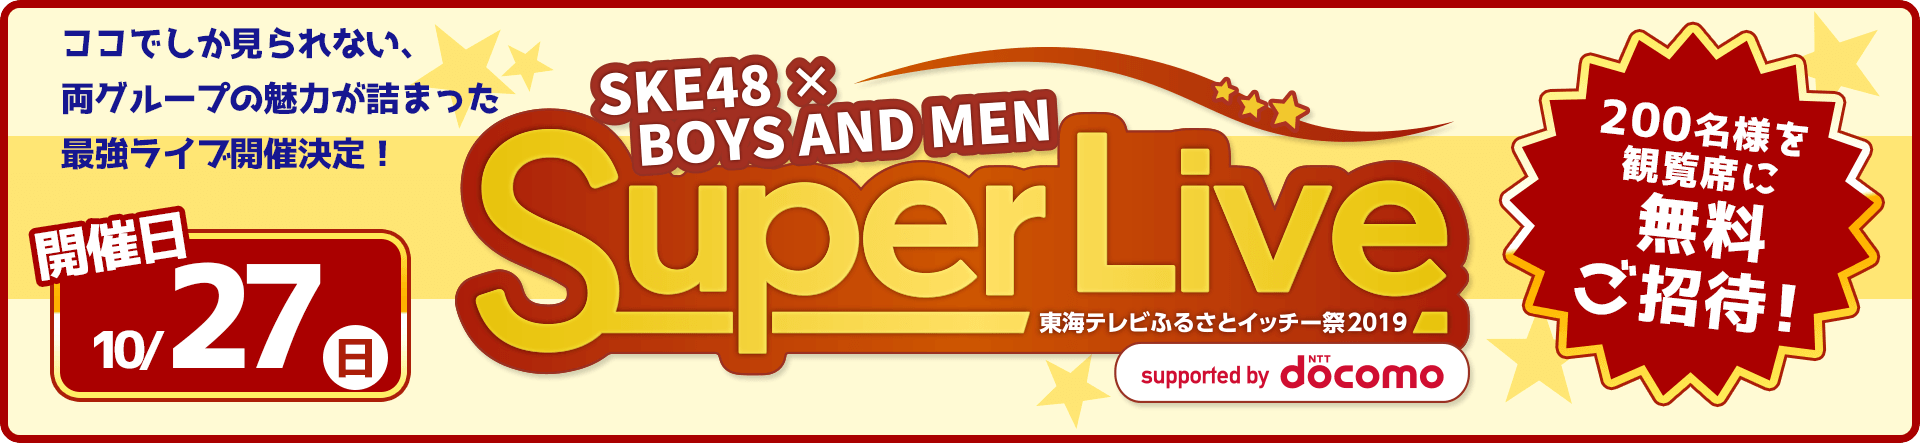 SKE48×BOYS AND MEN SuperLive